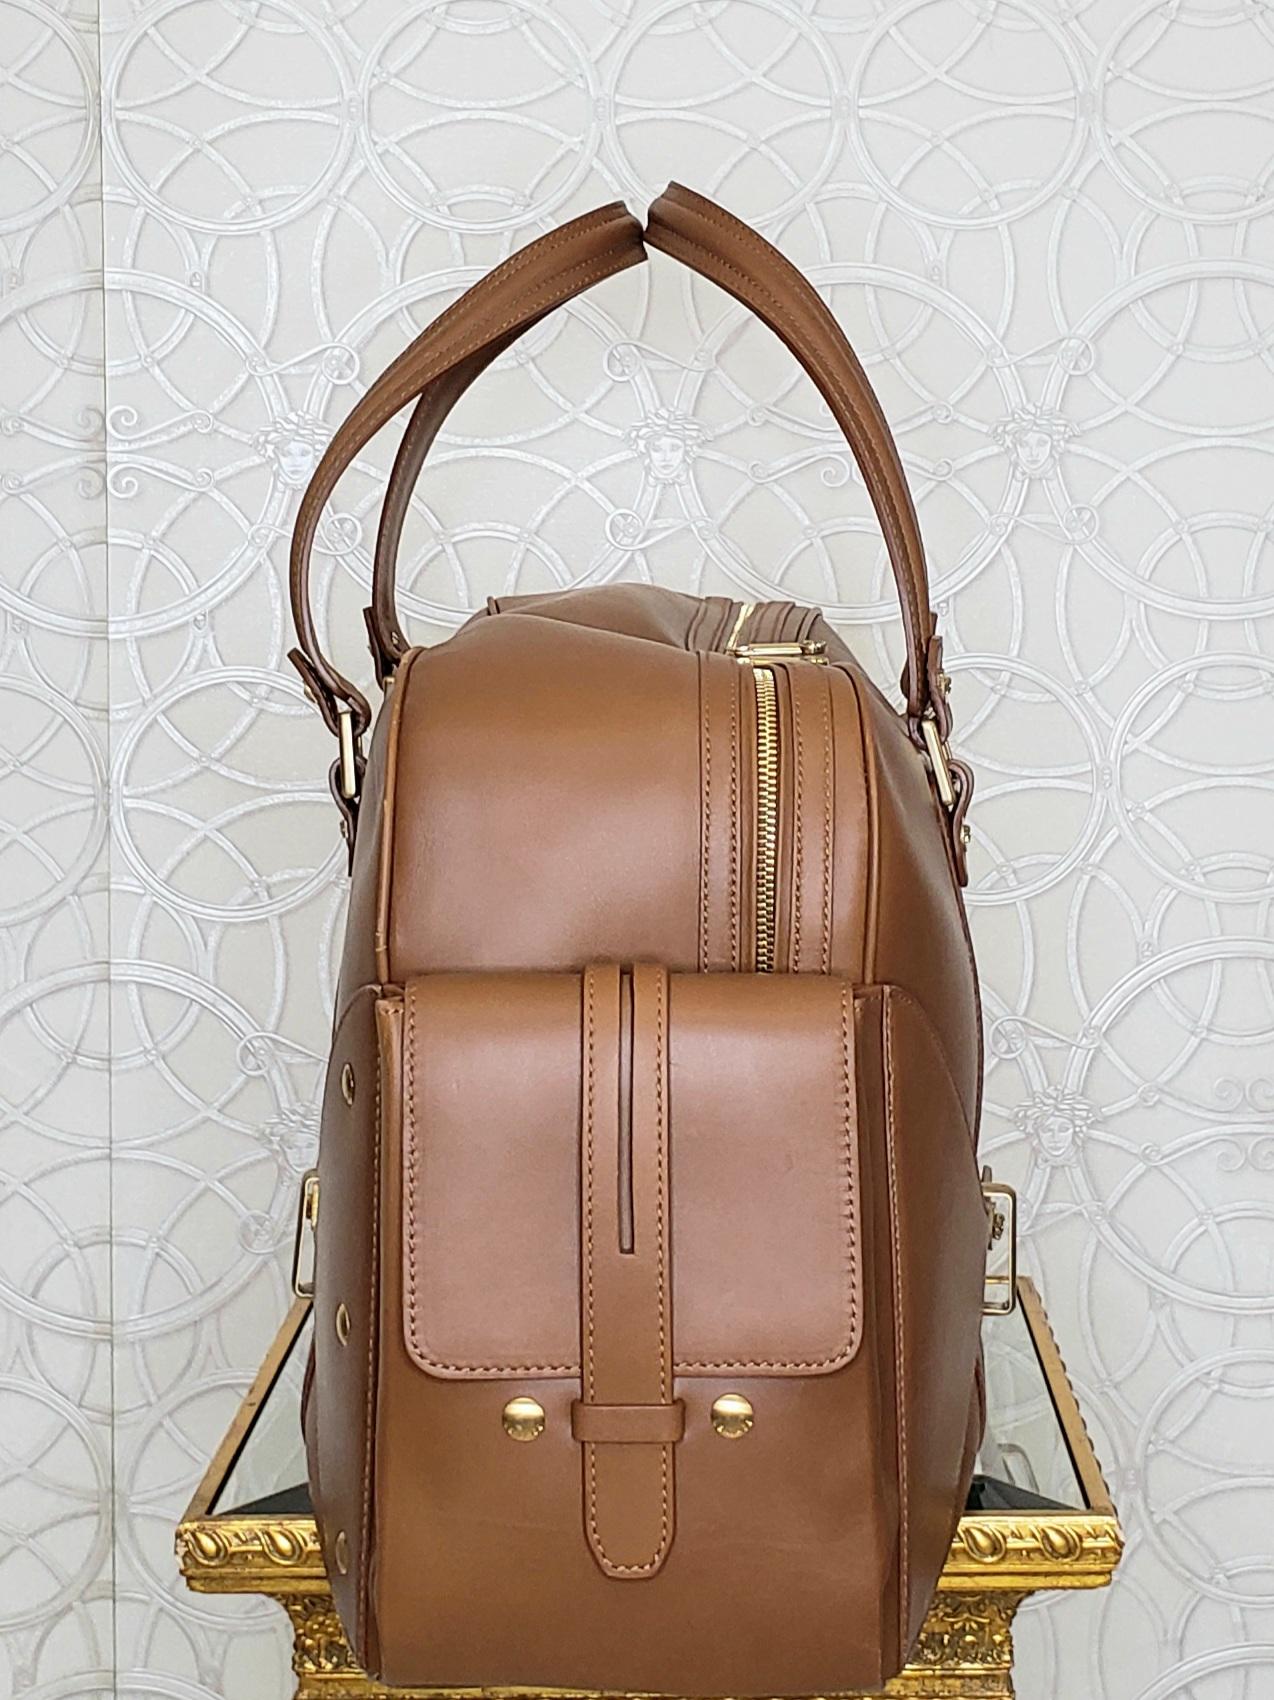 Brown S/S 2012 Look # 27 New VERSACE men's runway brown leather travel handbag